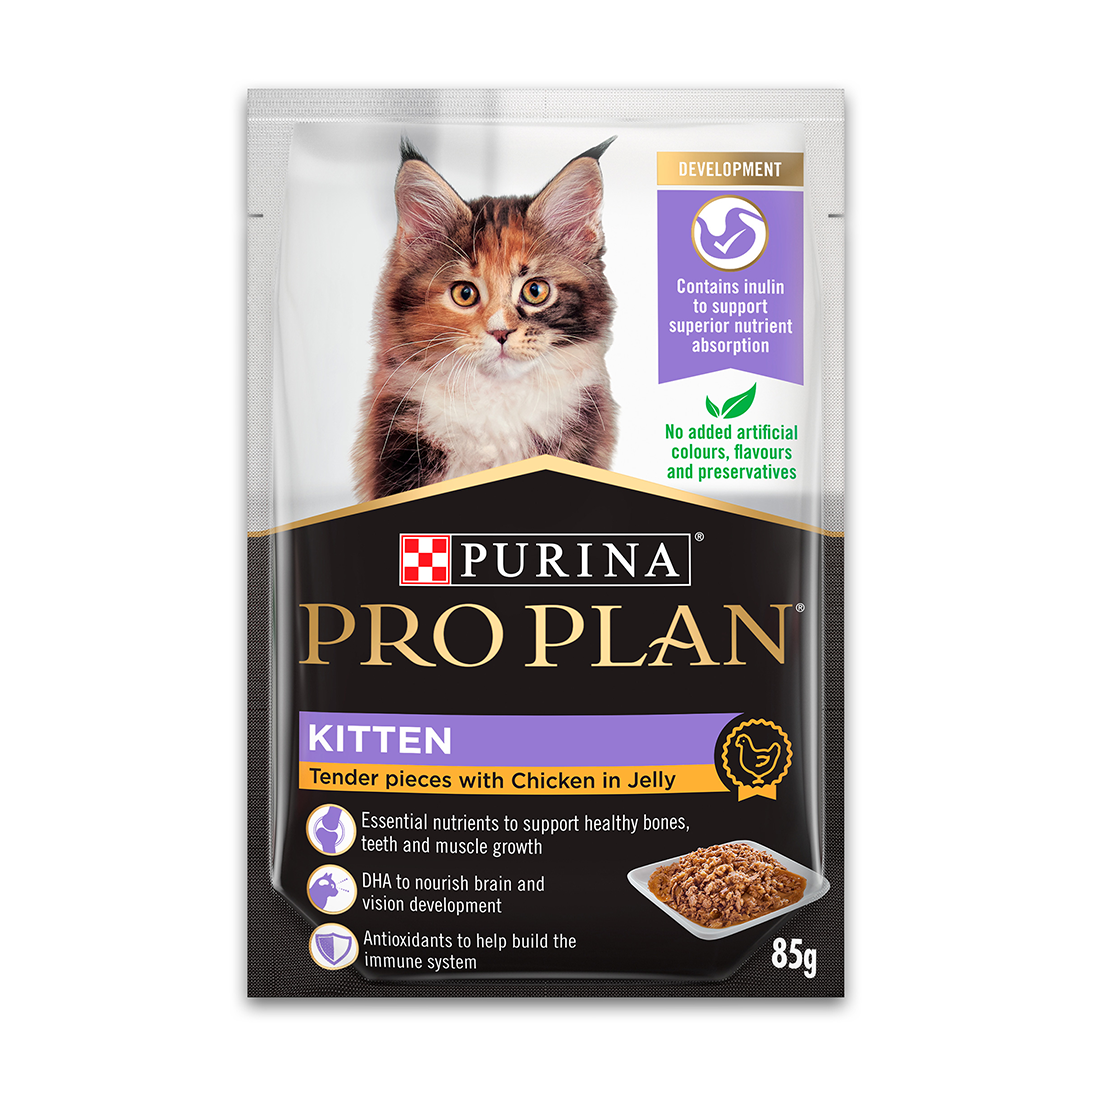 Pro Plan Cat Food Pouch Kitten Chicken & Jelly